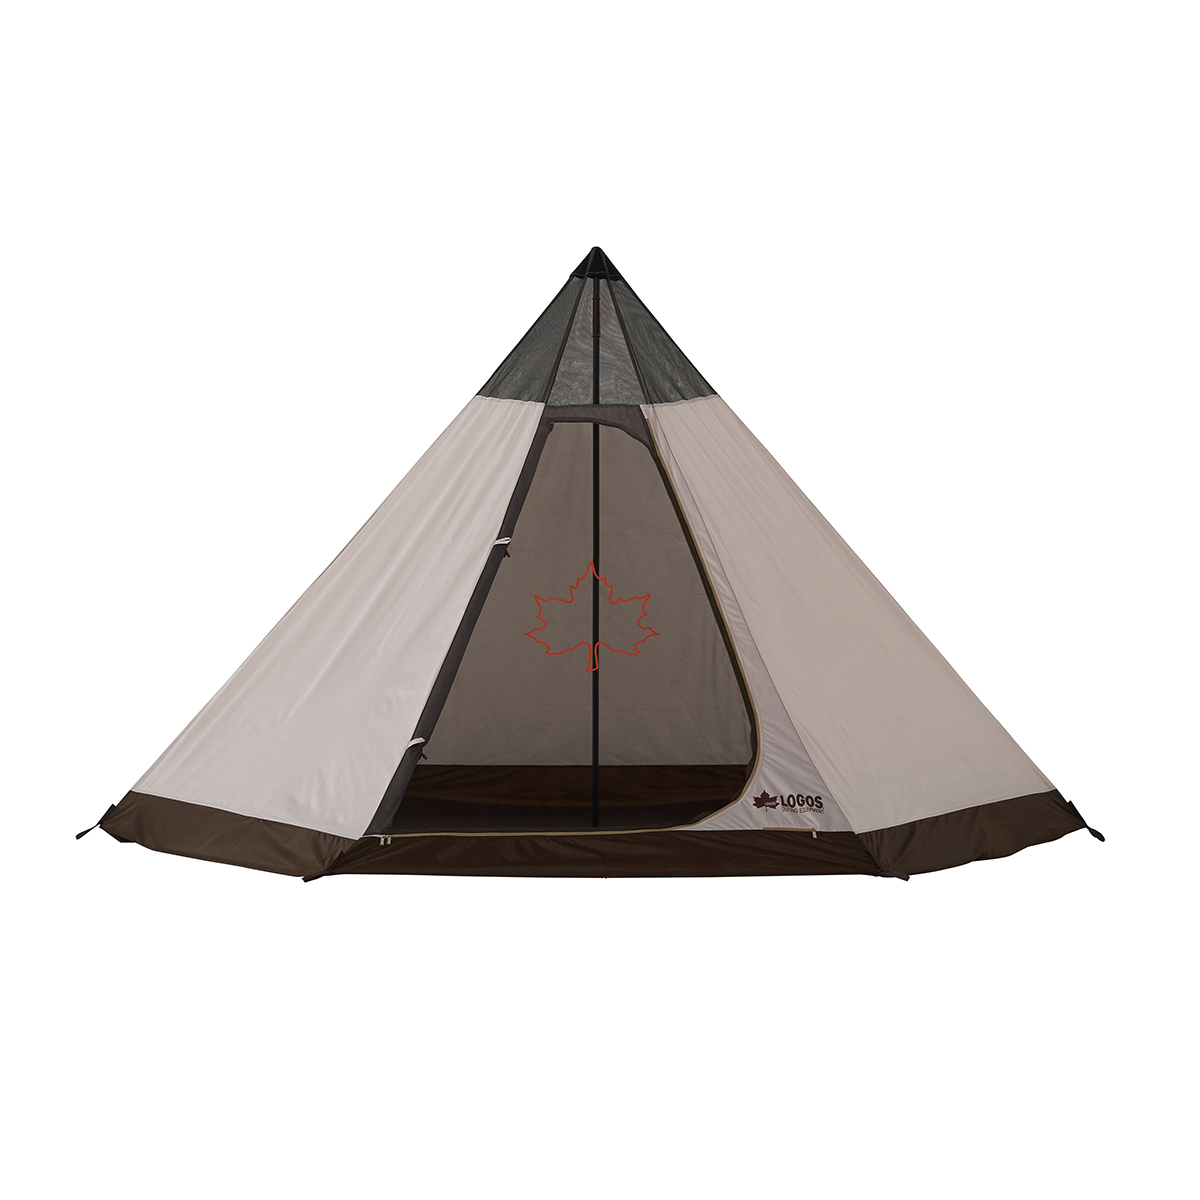 SNOOPY Tepee テント-BB|ギア|テント|ワンポール|製品情報|ロゴス ...